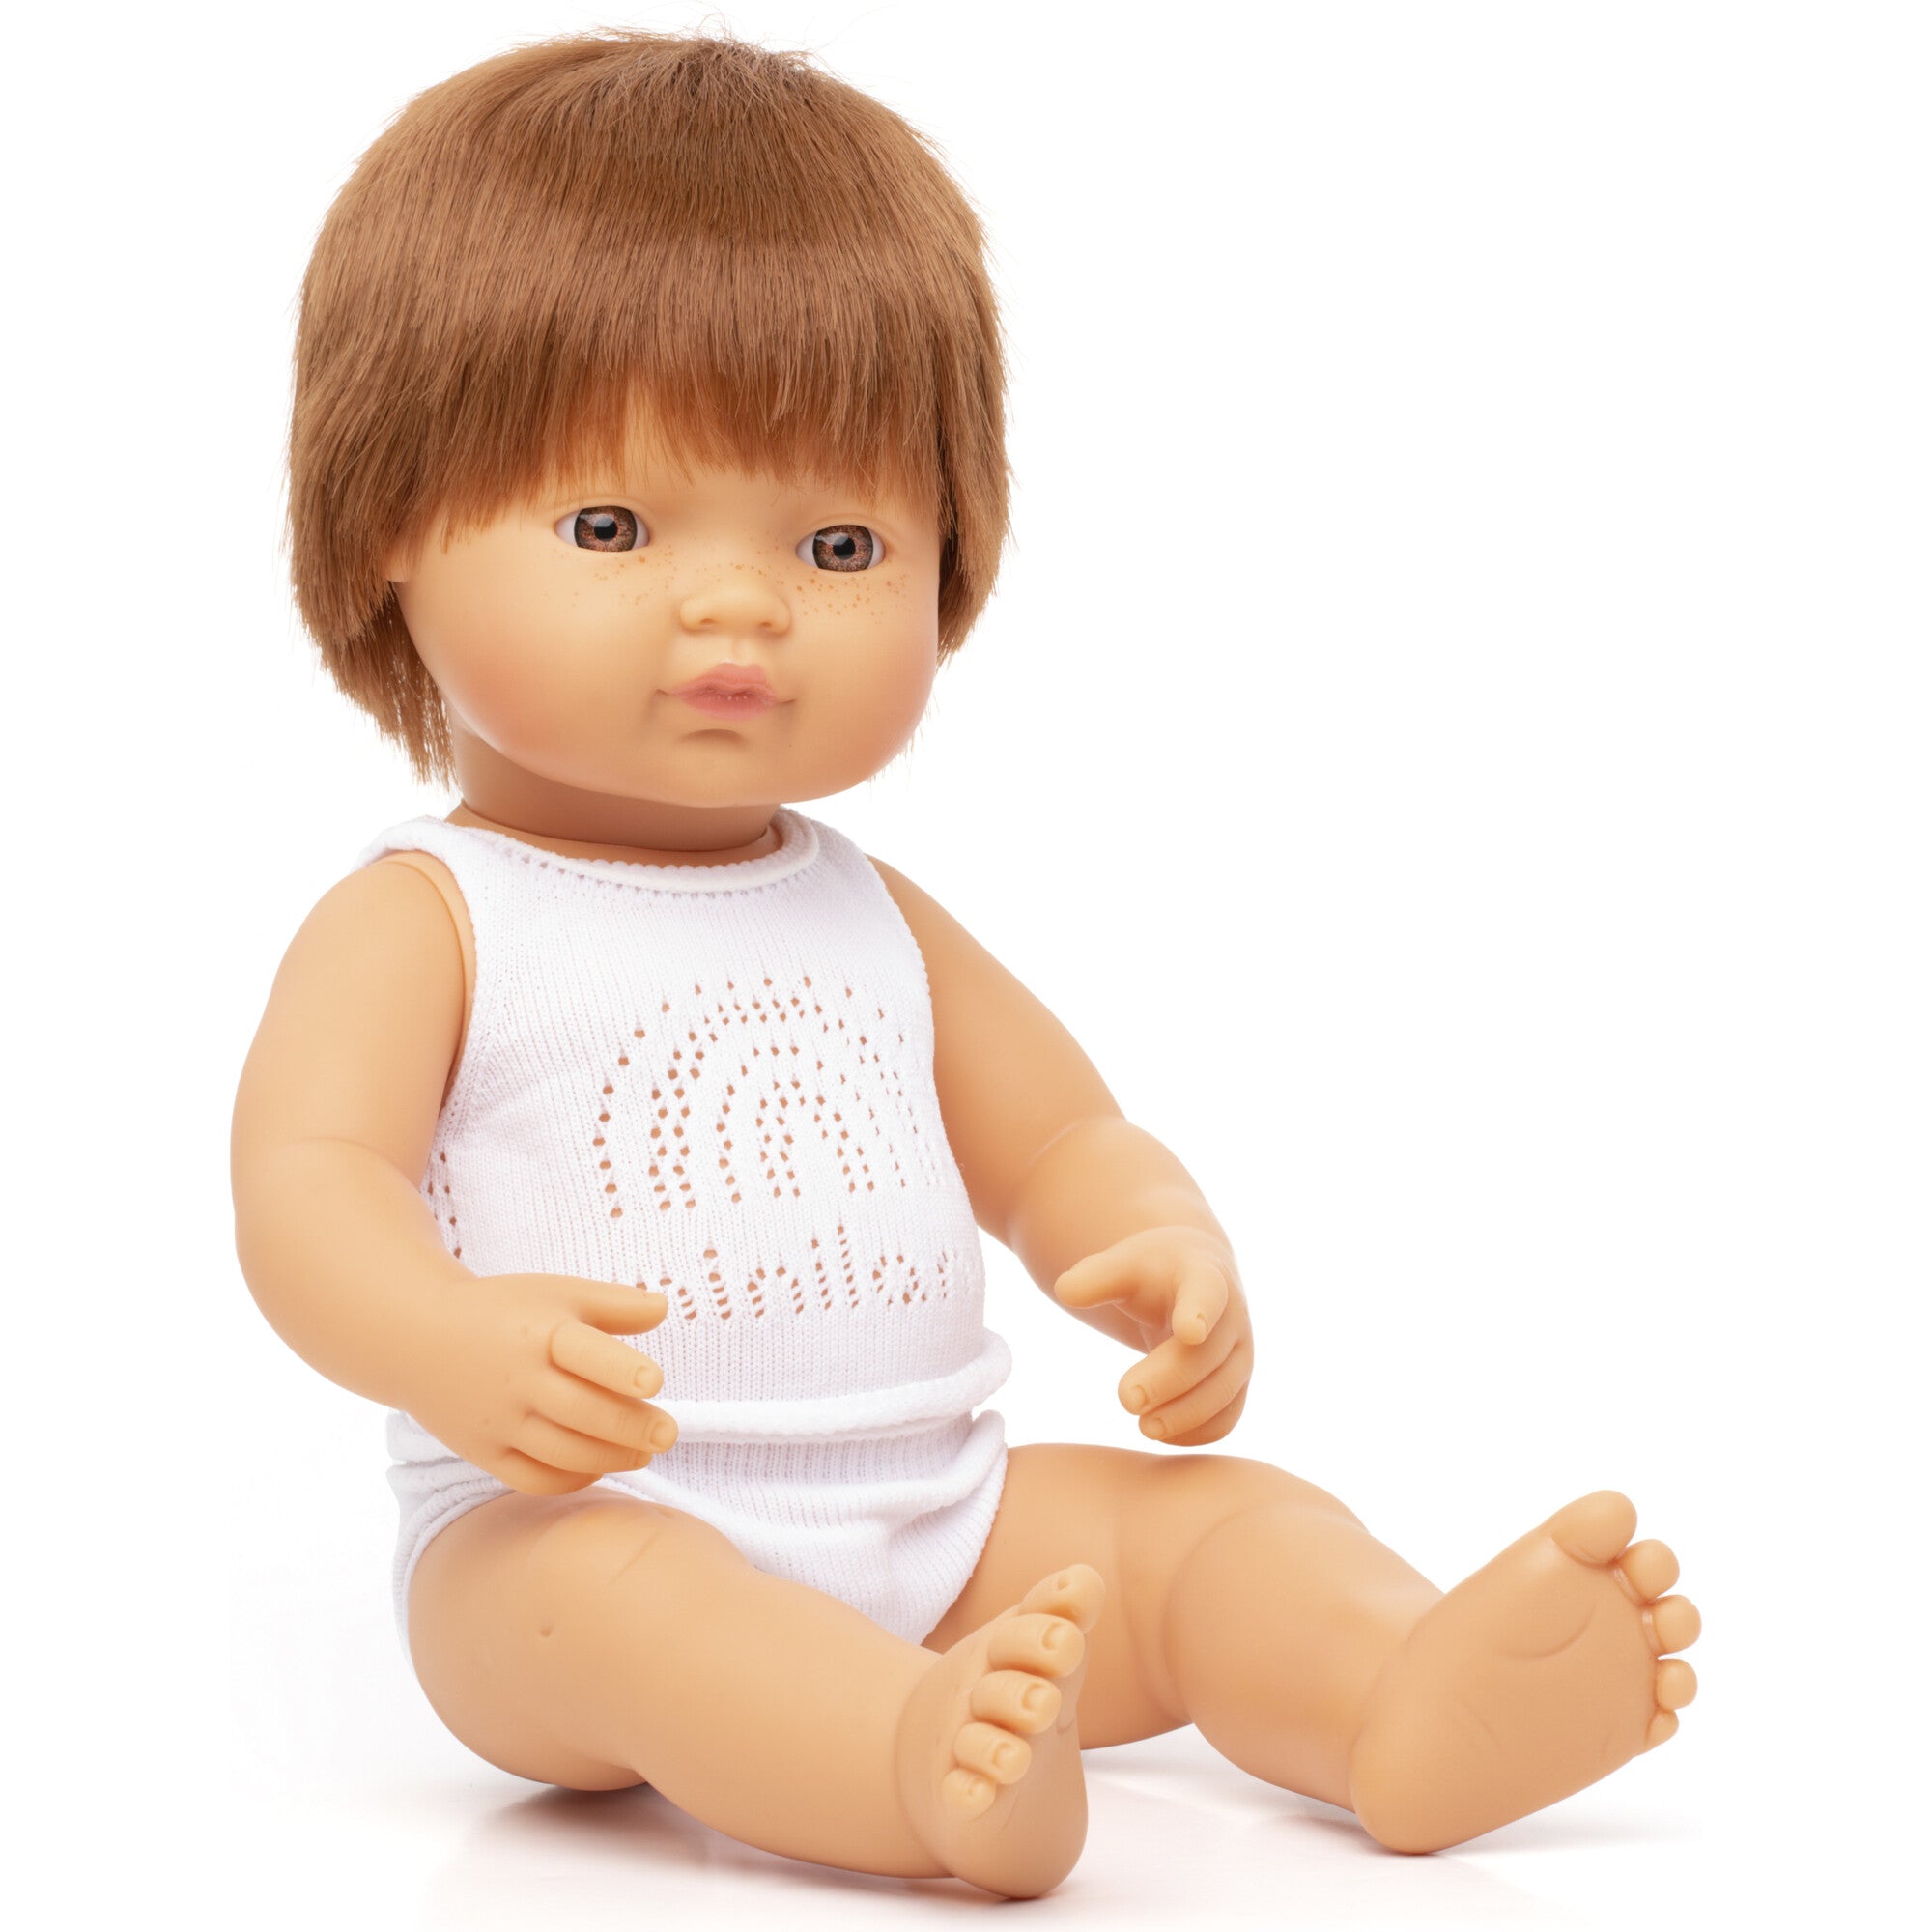 Miniland Baby Doll Caucasian Redhead Boy 15" Dolls